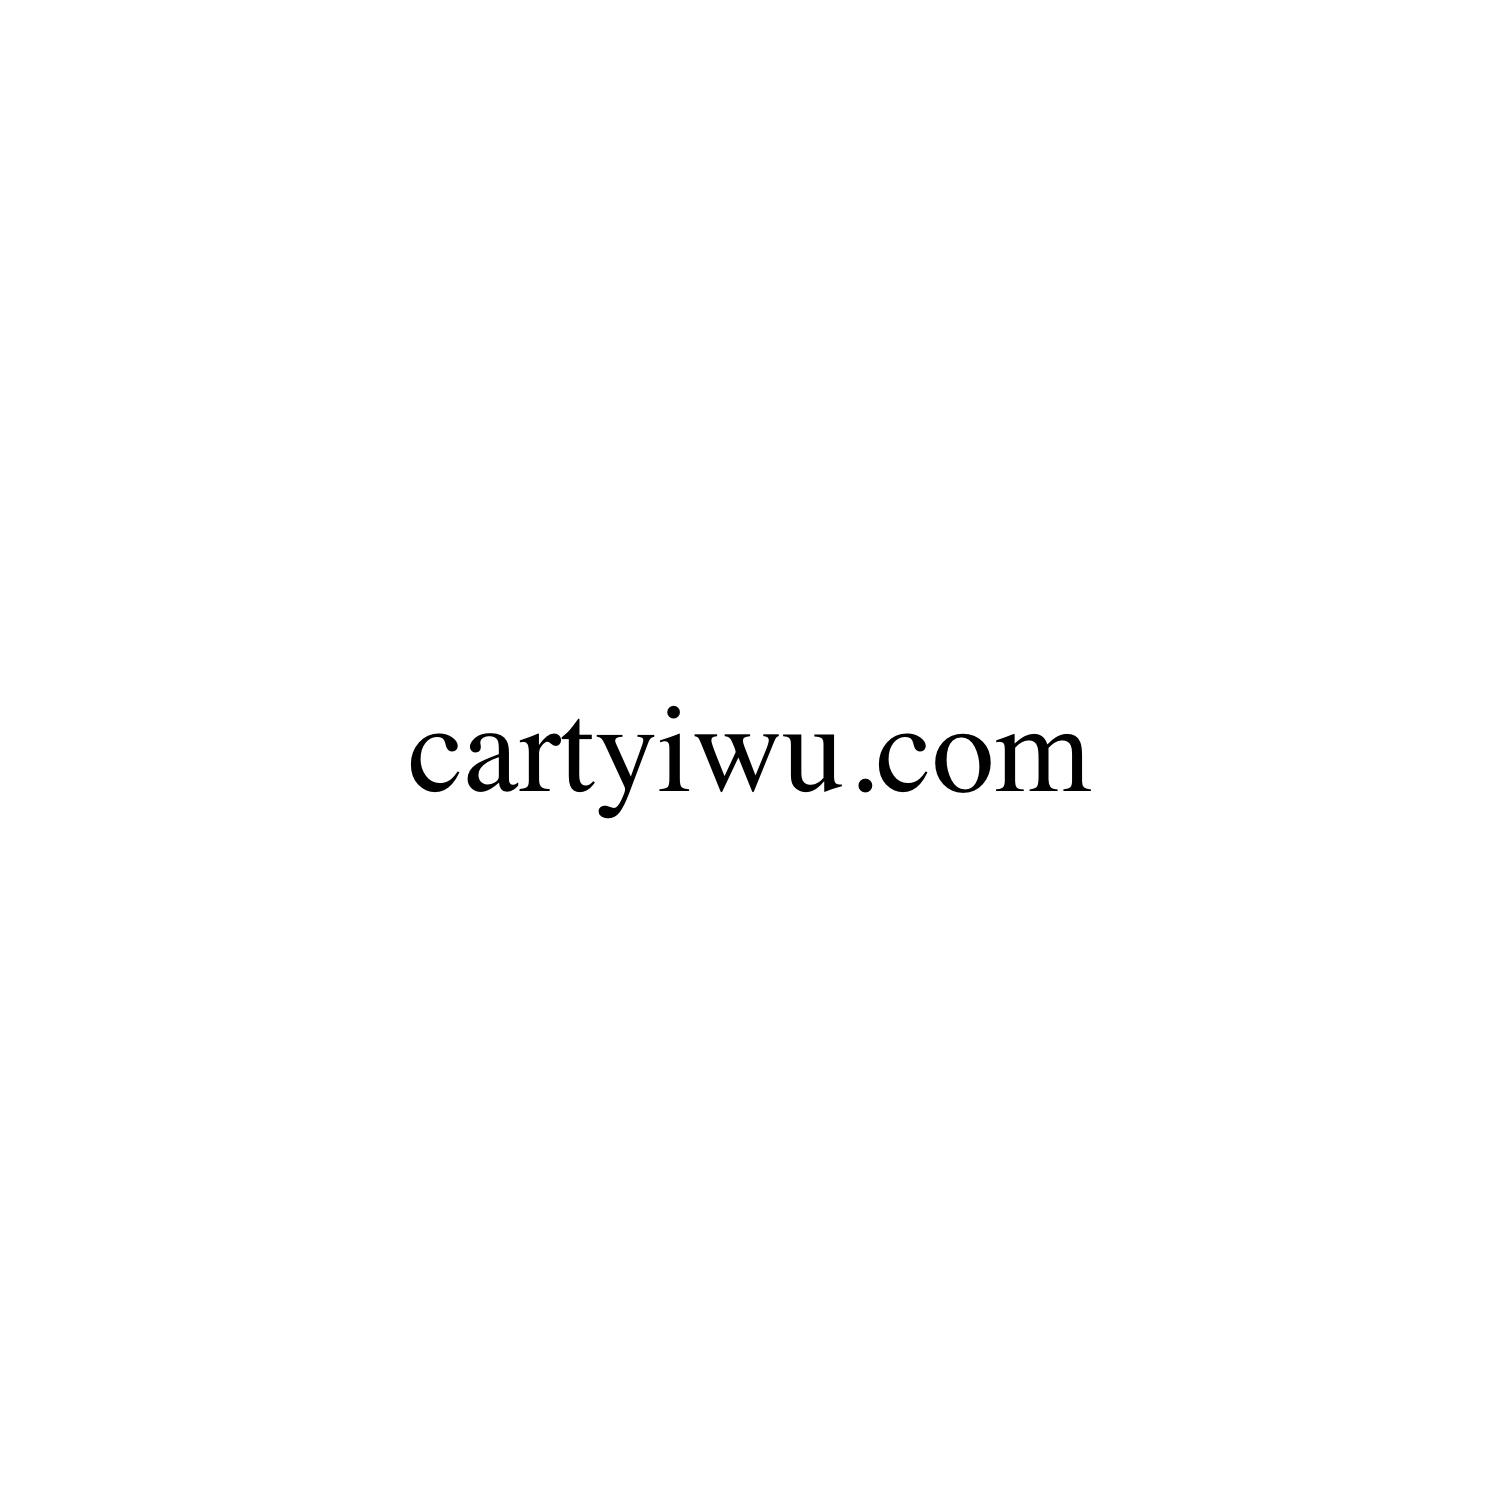 CARTYIWU.COM